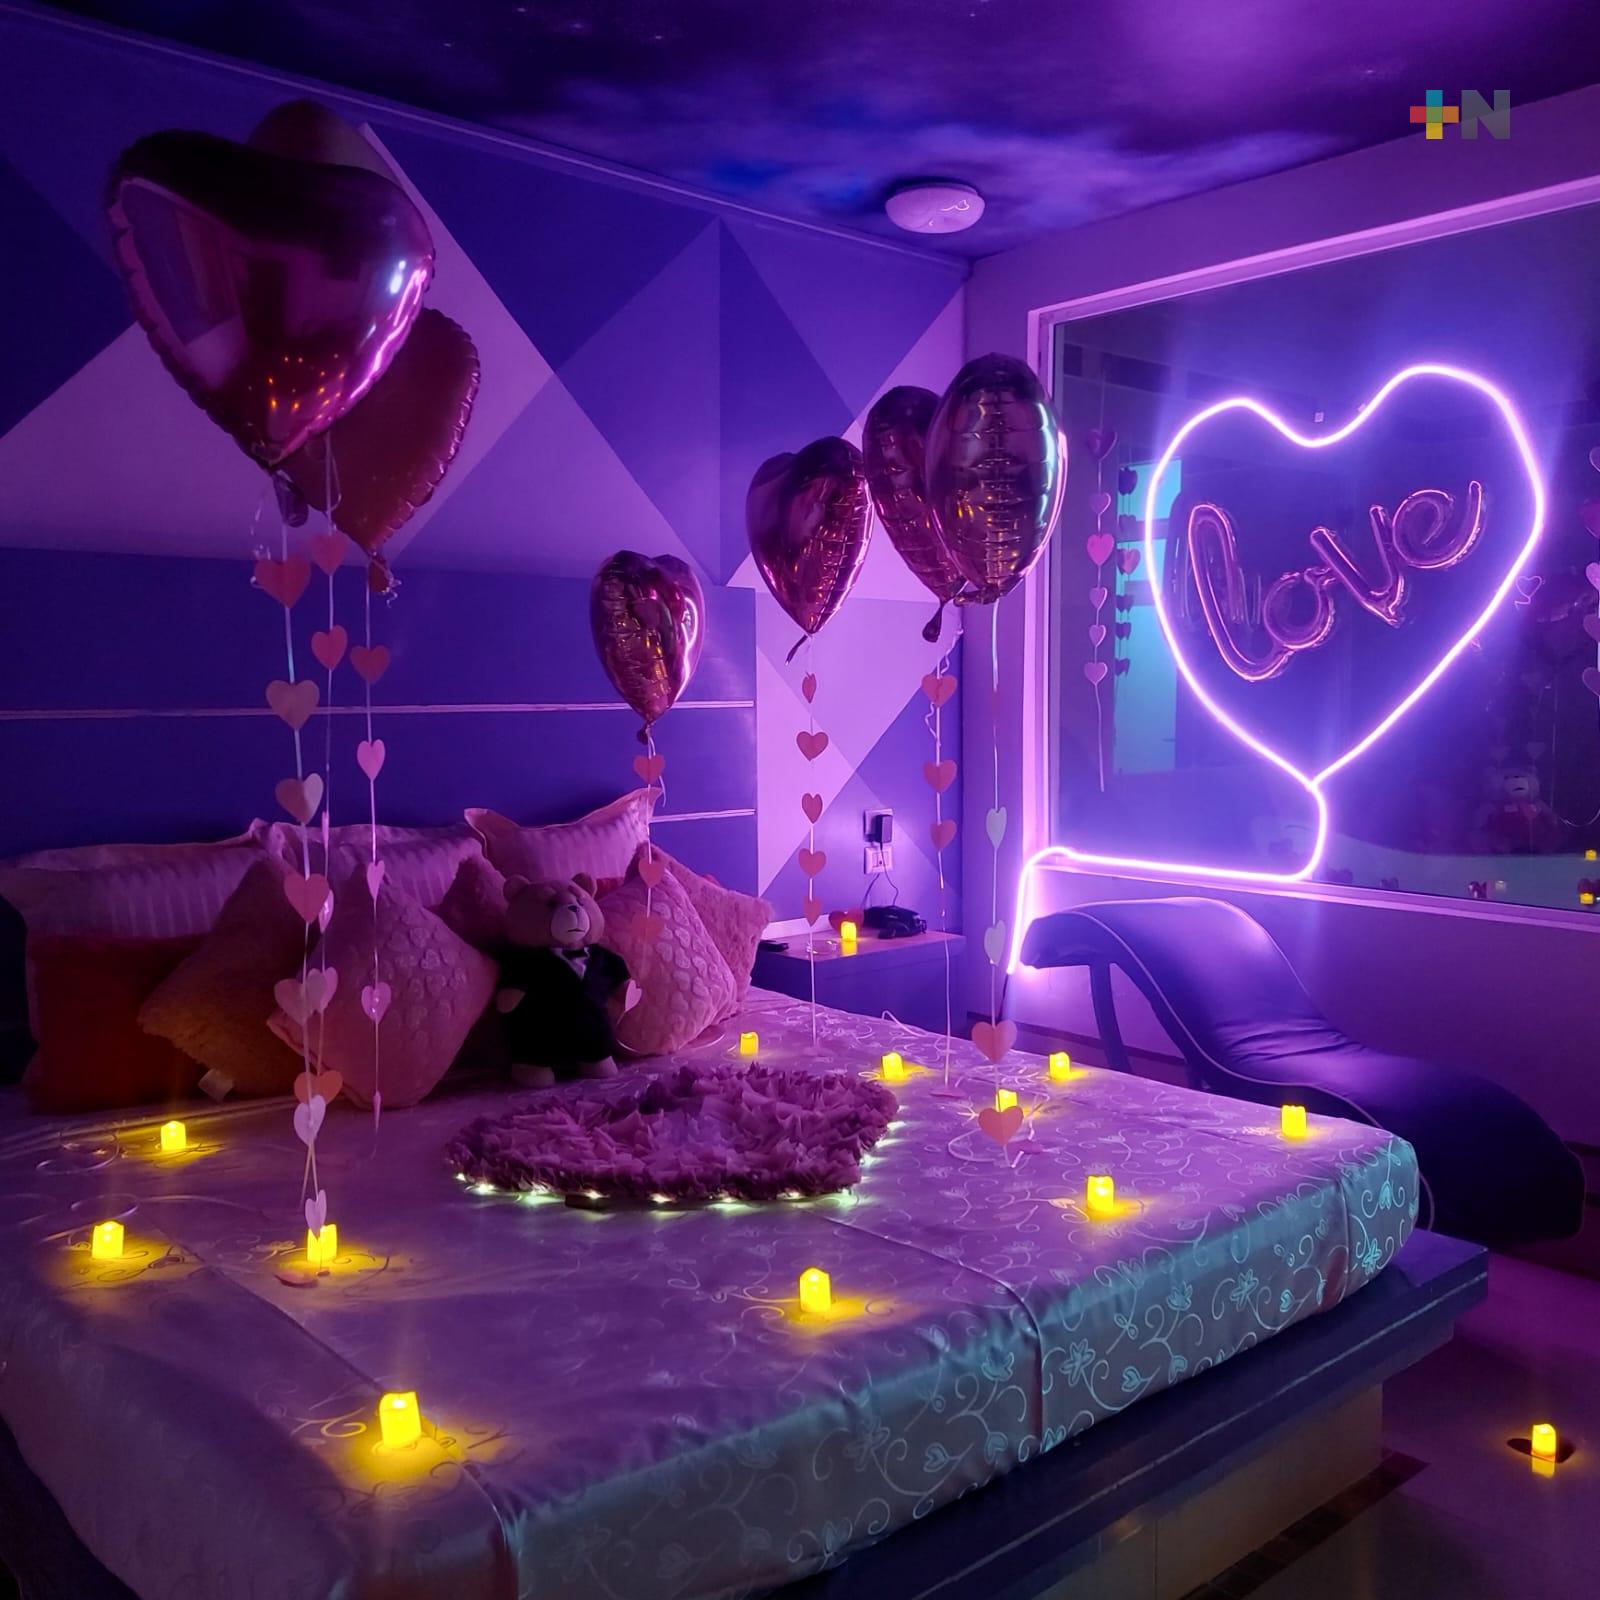 Moteles en Xalapa ofrecen decoraciones especiales este 14 de febrero